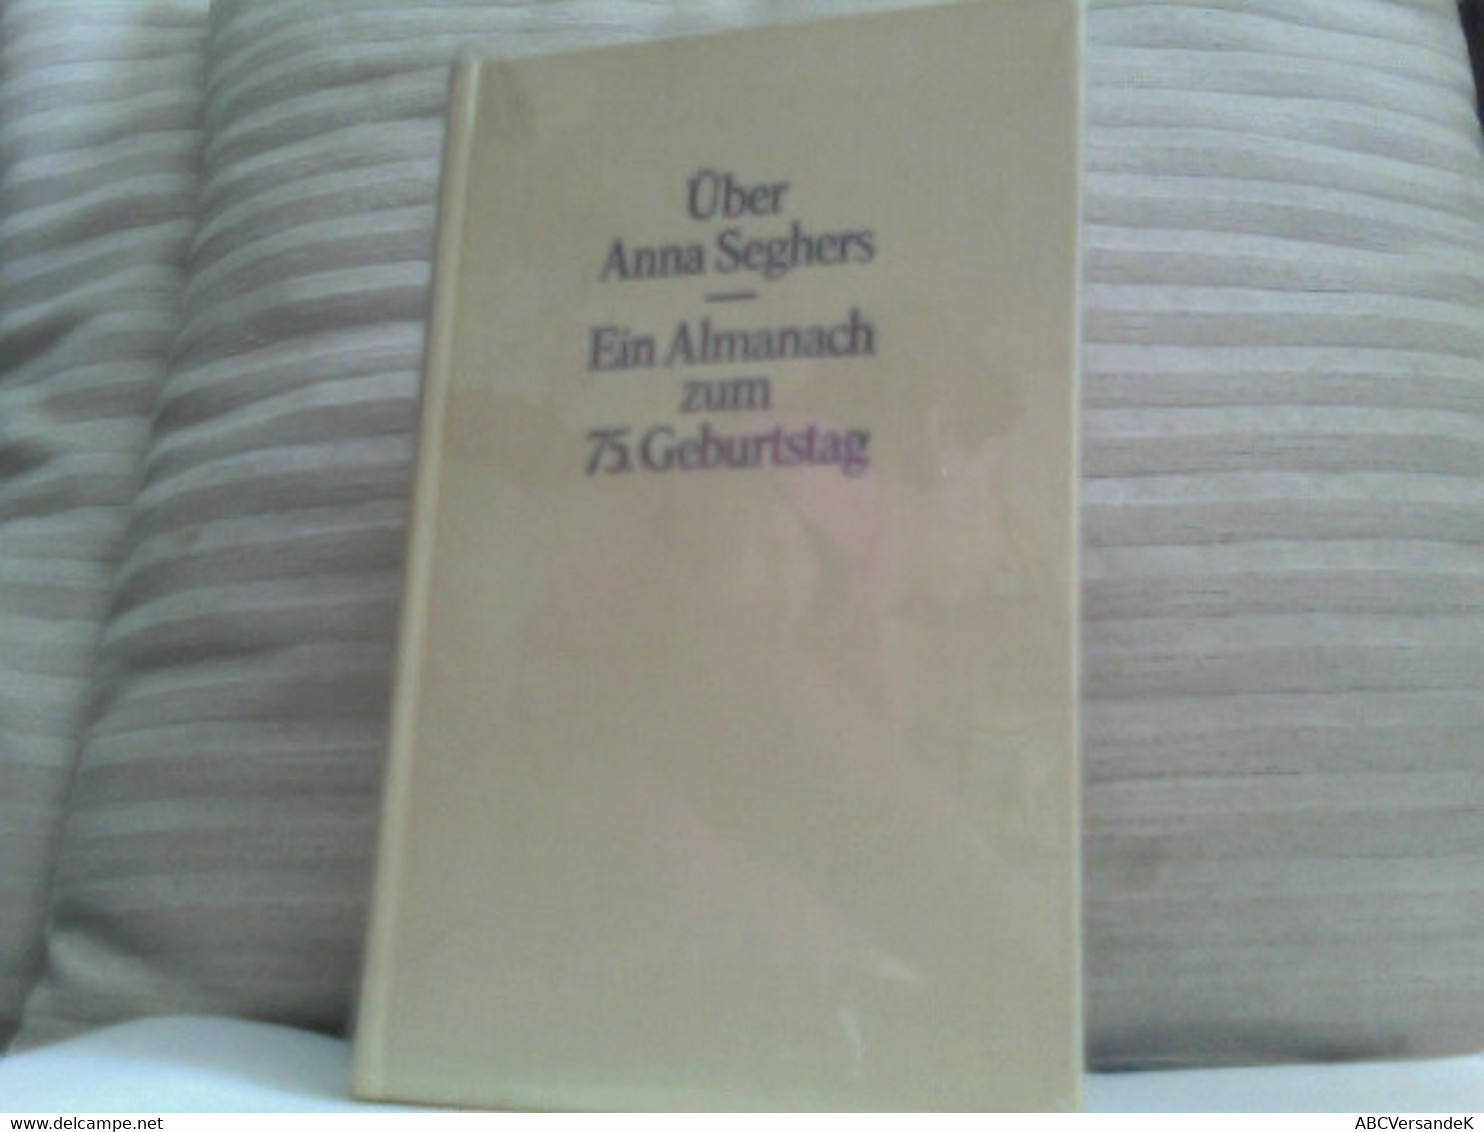 Über Anna Seghers -  Ein Almanach Zum 75. Geburtstag - Biographien & Memoiren